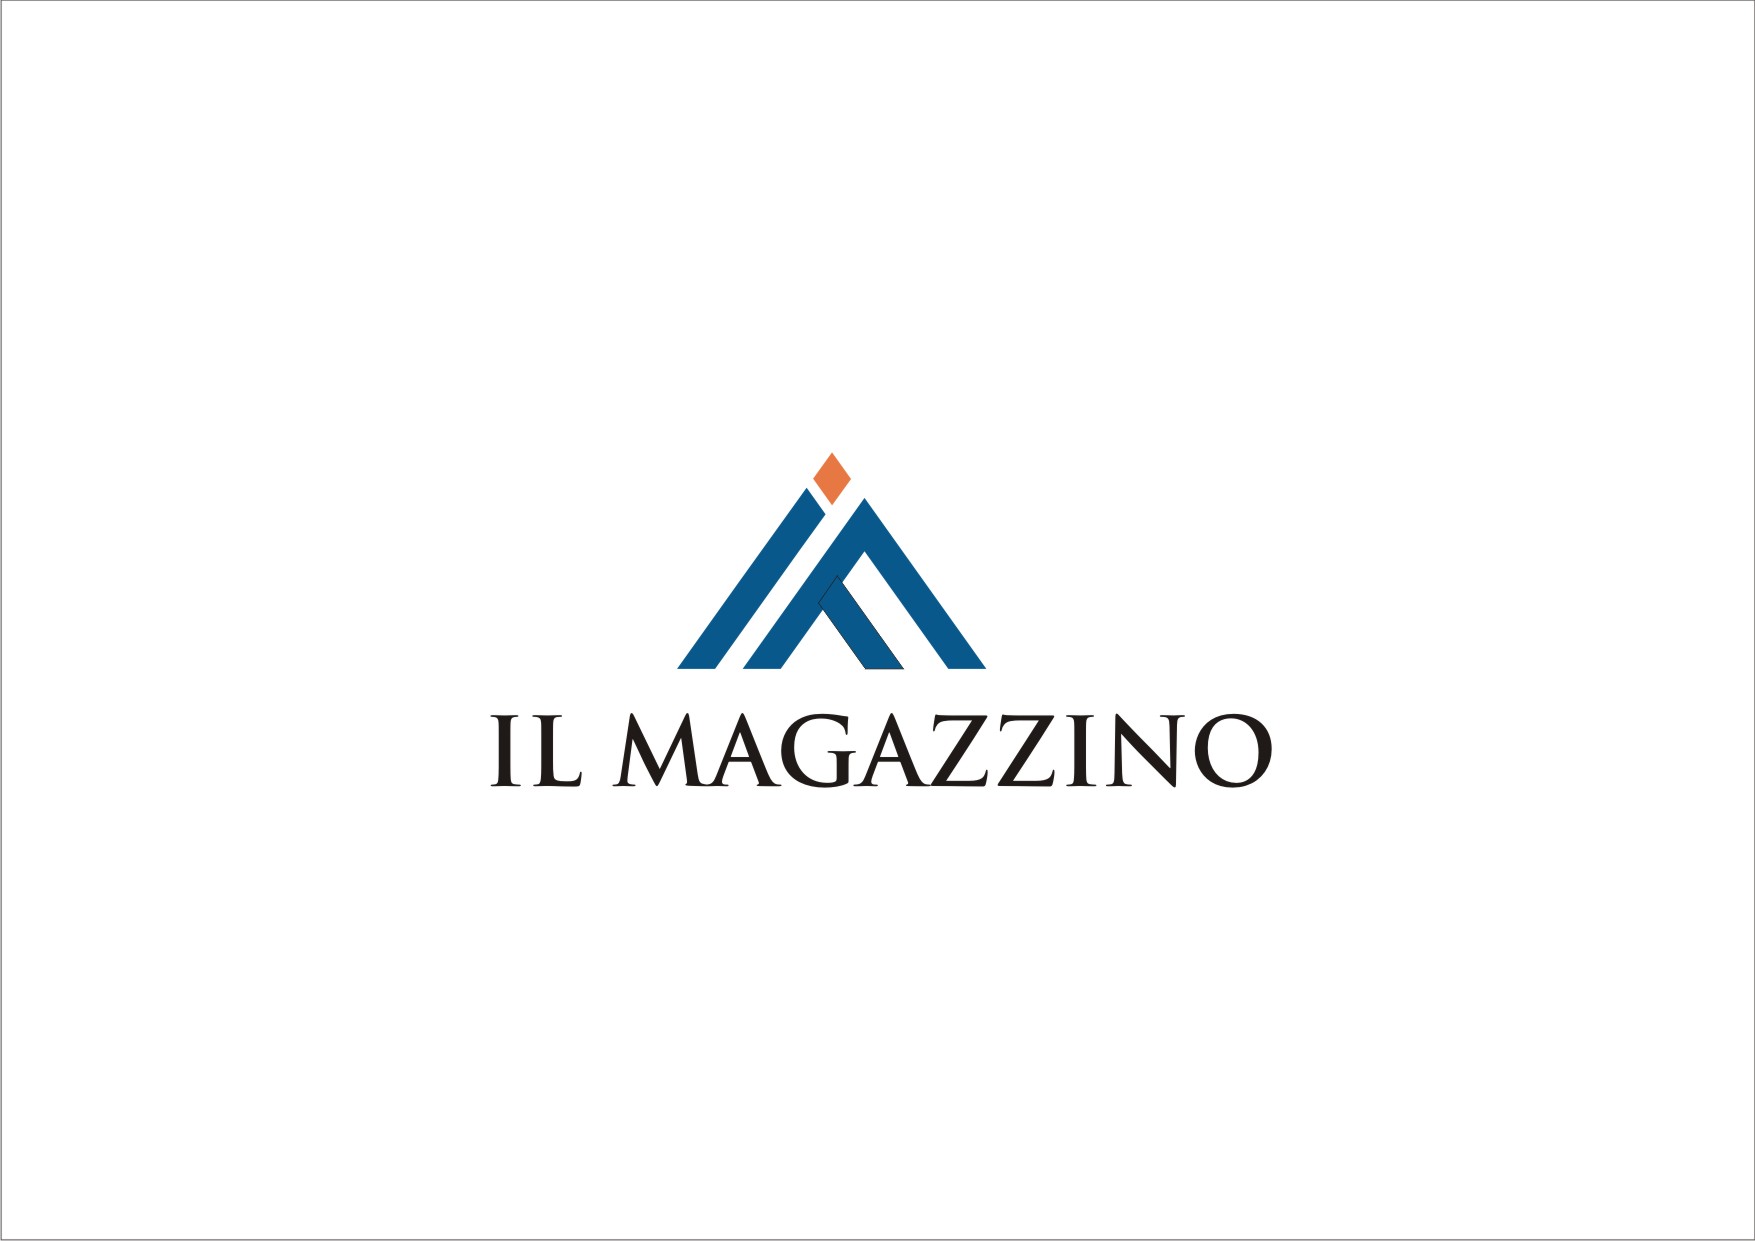 Logo Design Contest for Il magazzino | Hatchwise